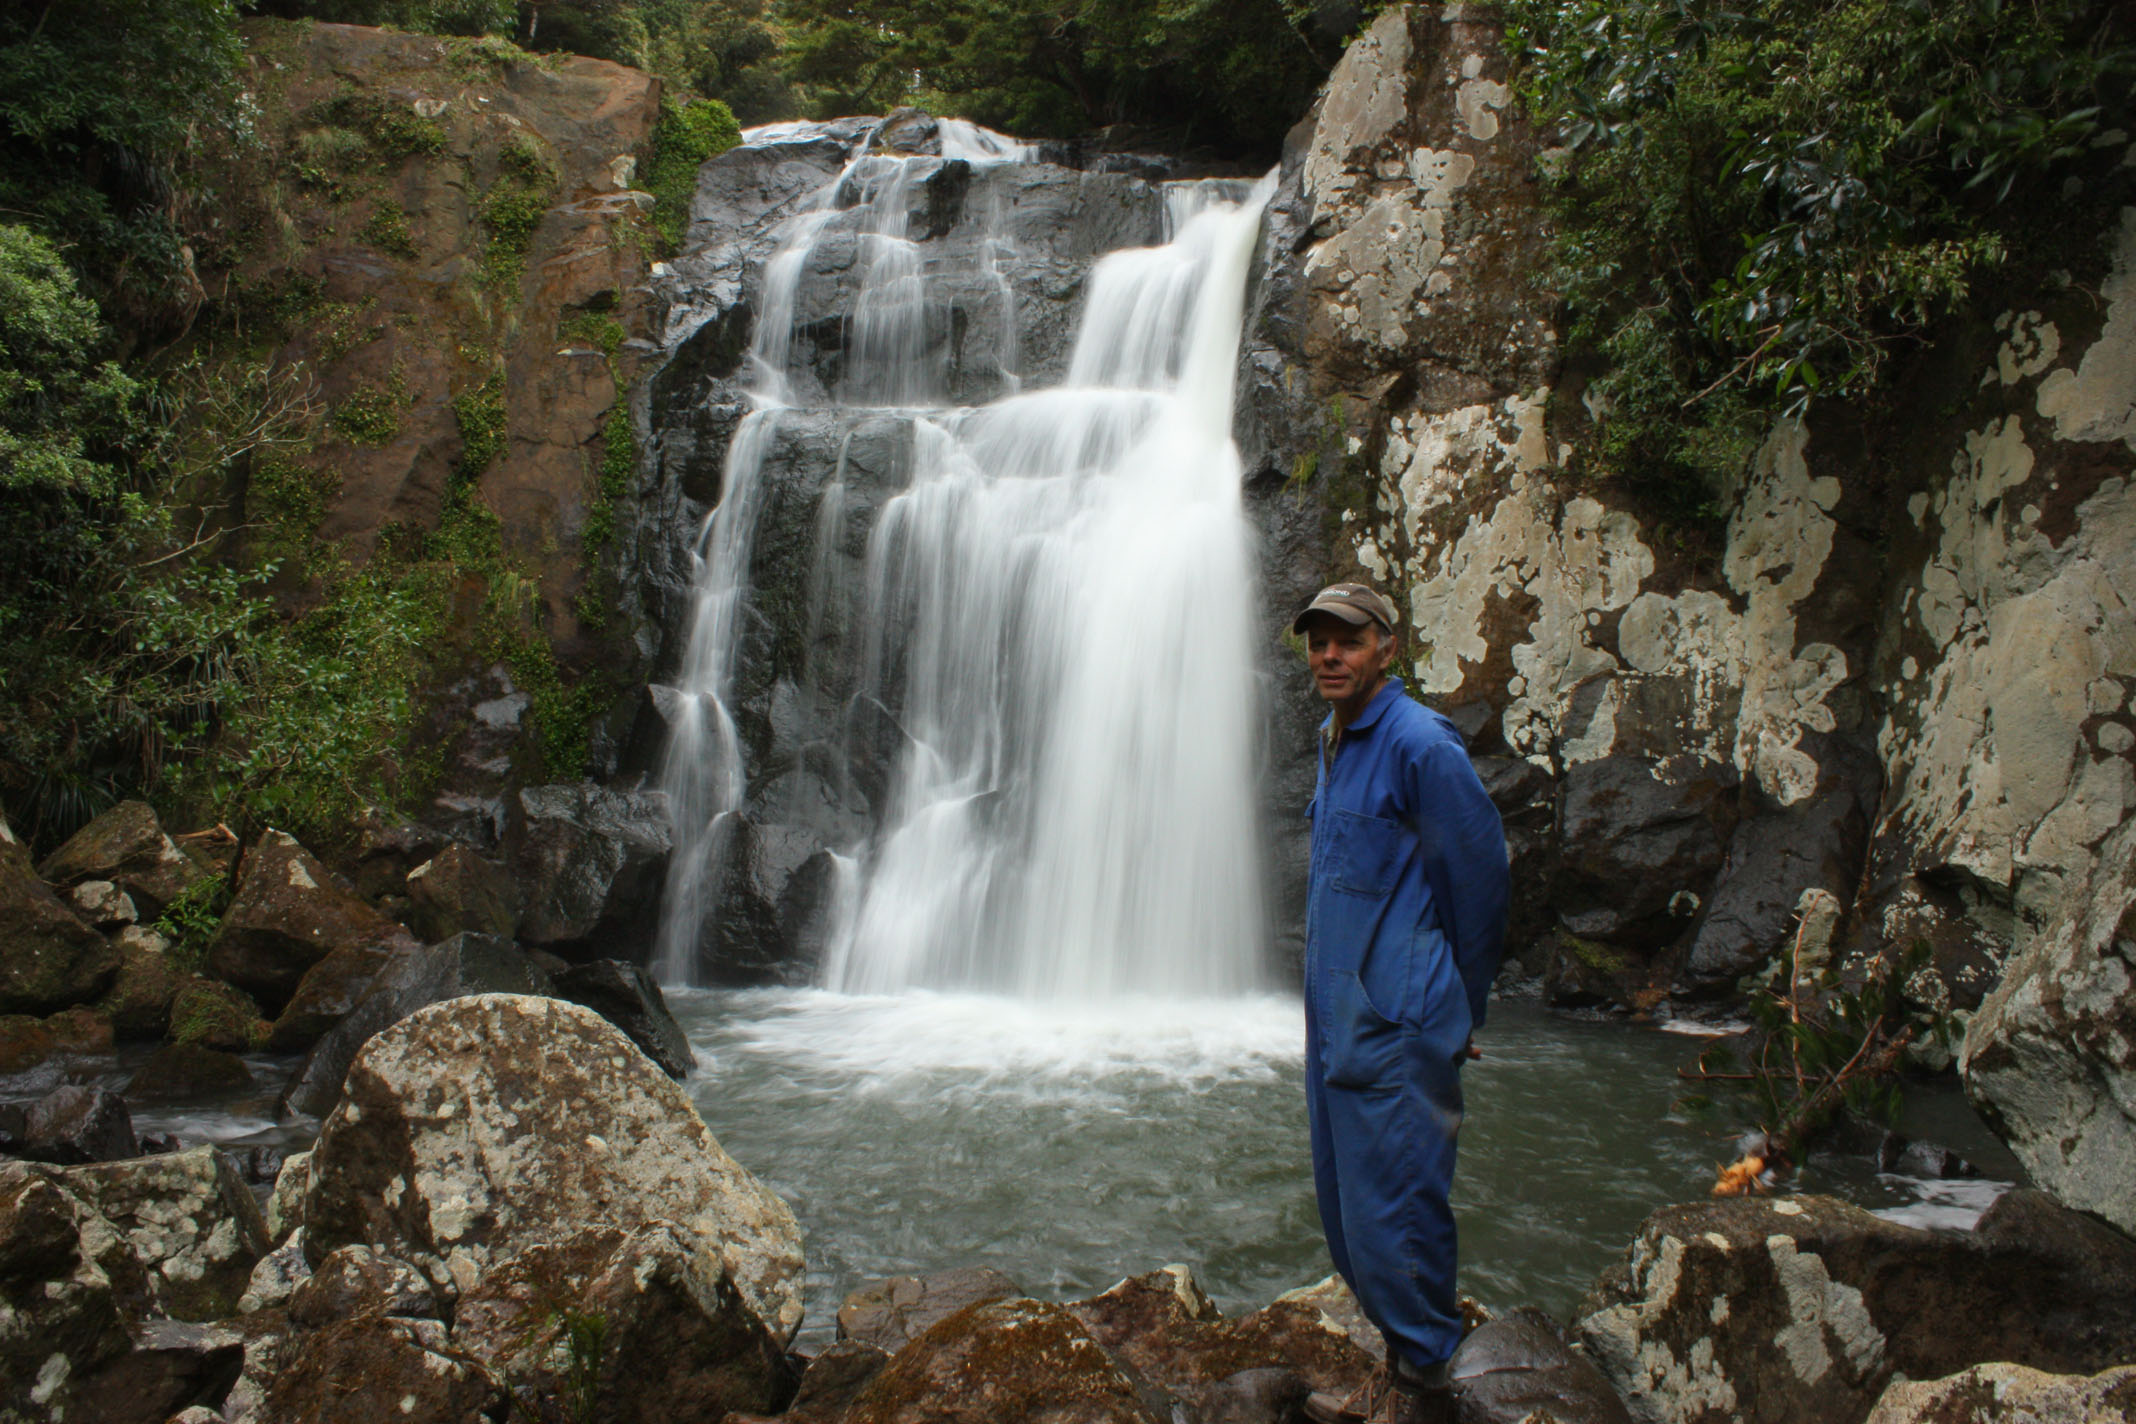 Waterfall on Mangakaraka Stream, Puketi Scenic Reserve. Photo by Ang Wickham